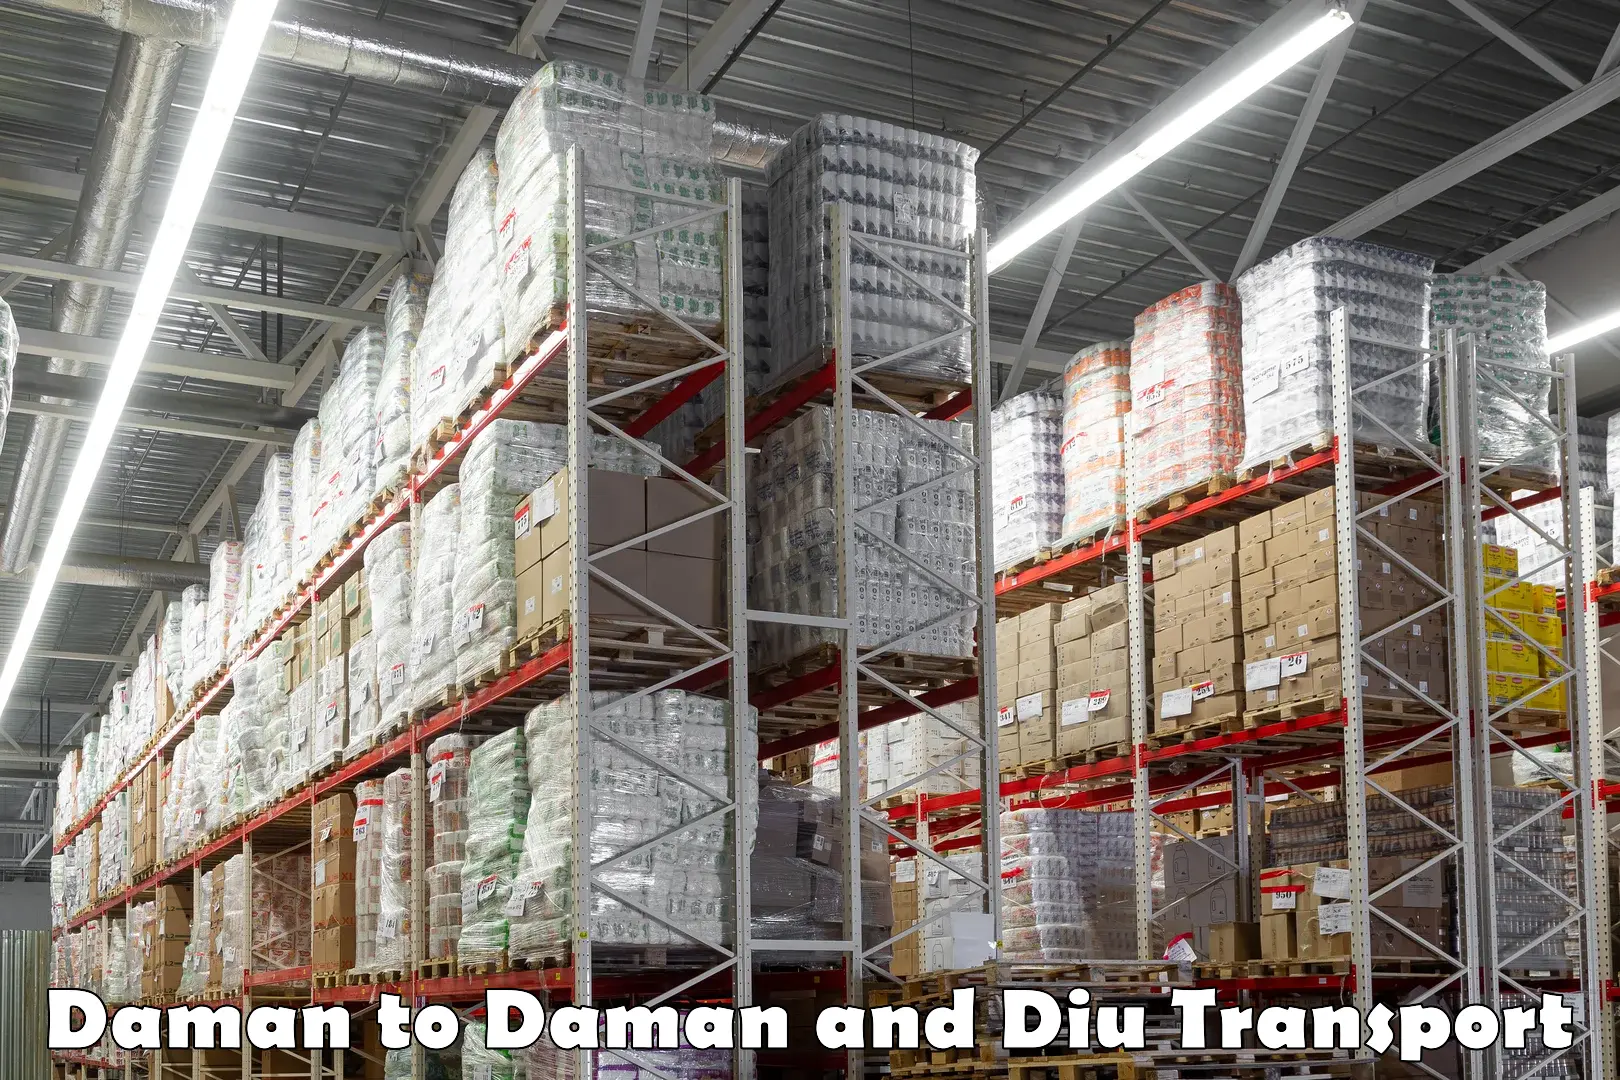 Daily transport service Daman to Daman and Diu